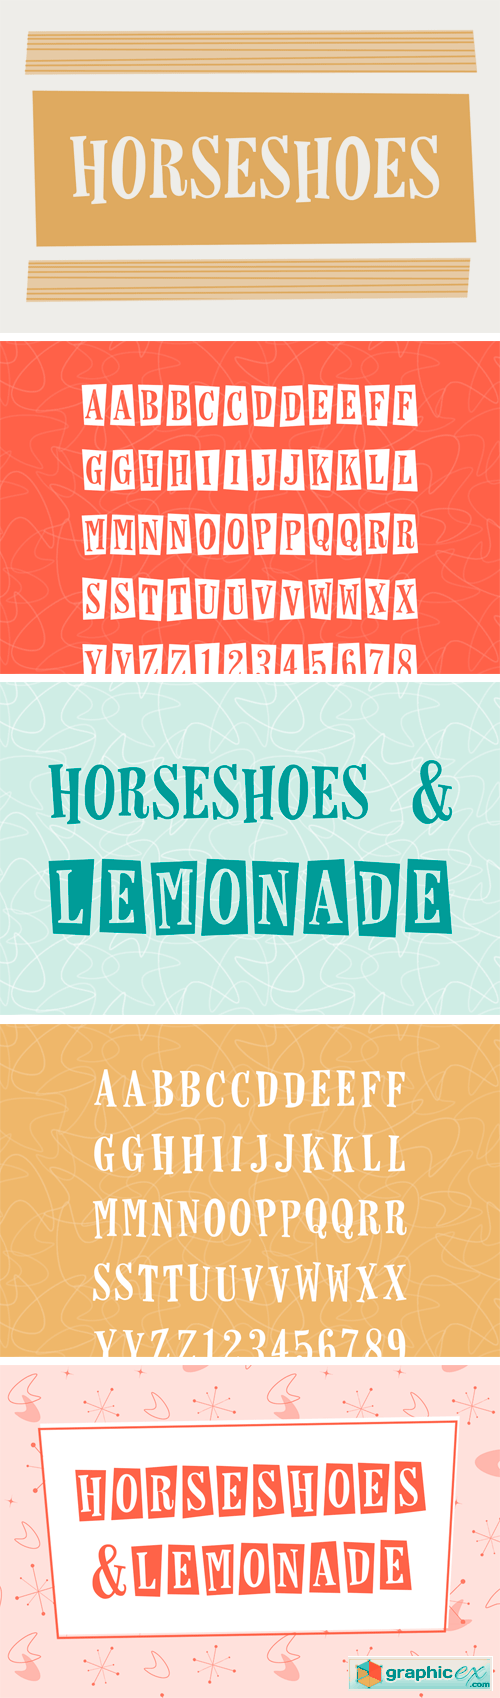 Horseshoes & Lemonade